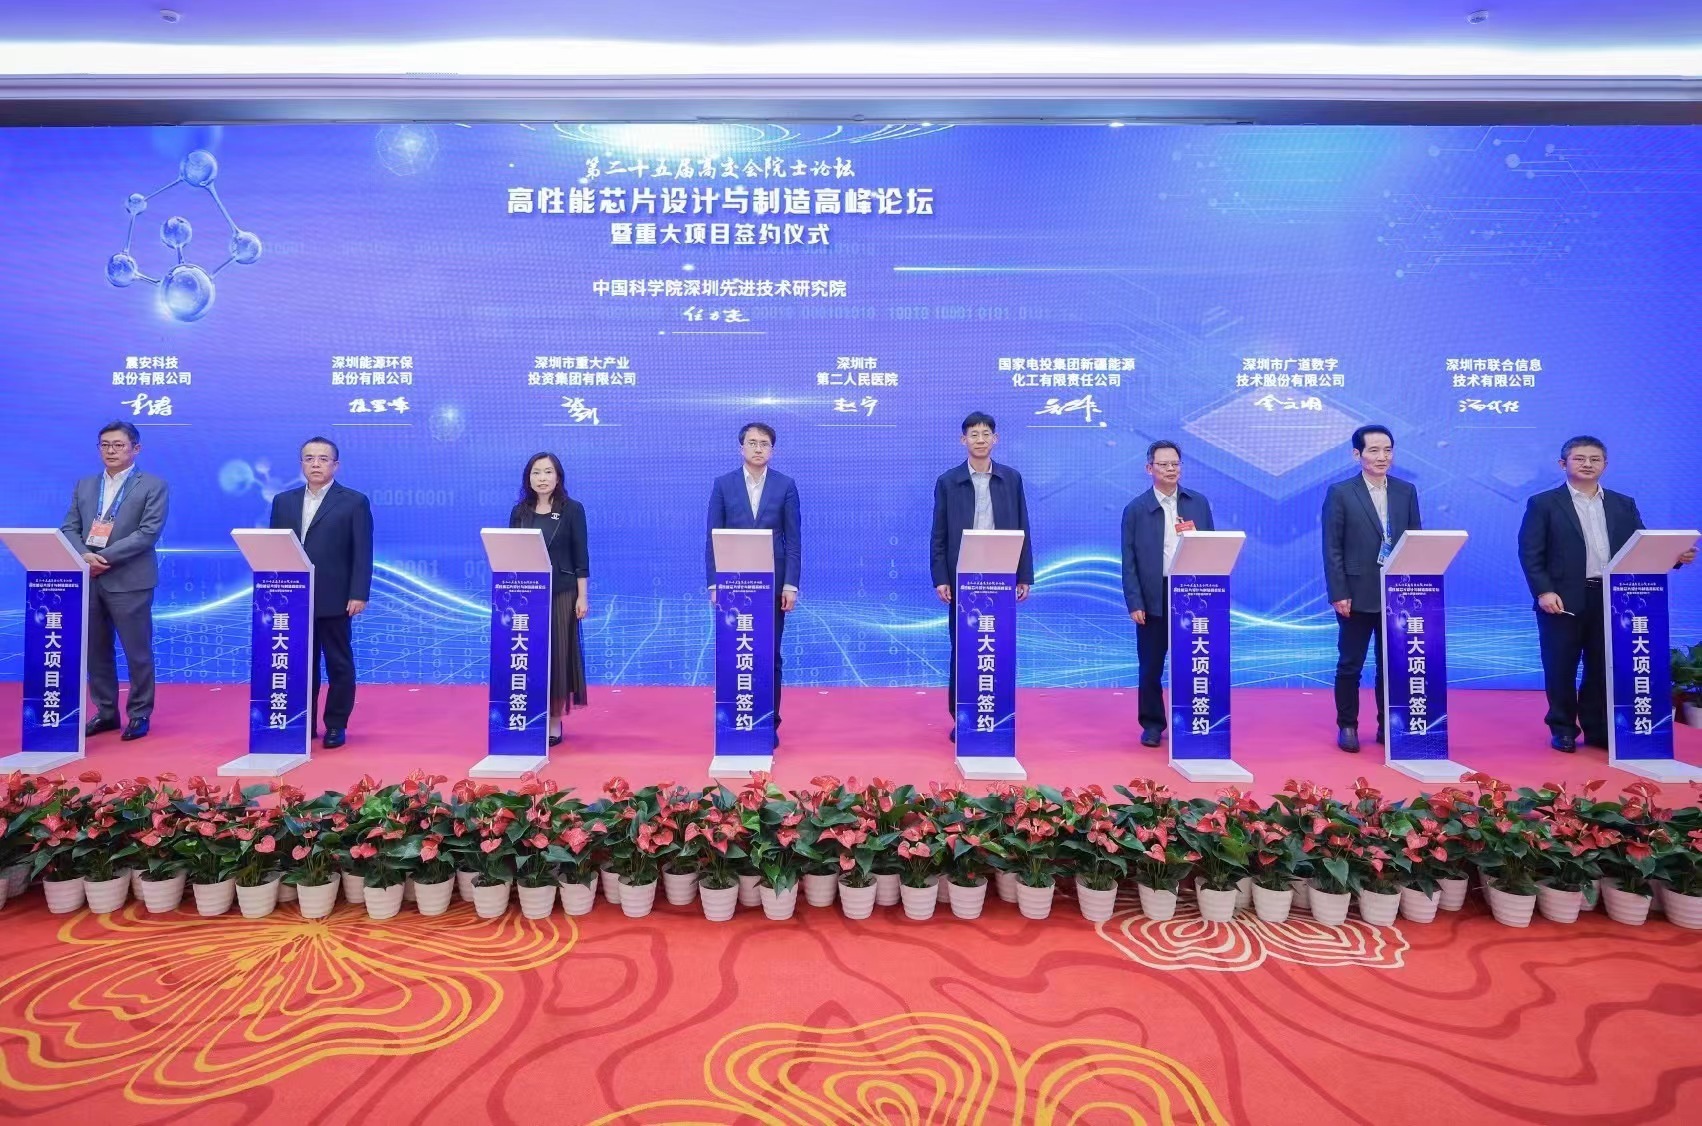 震安科技和中国科学院深圳先进技术研究院联合成立了联合实验室